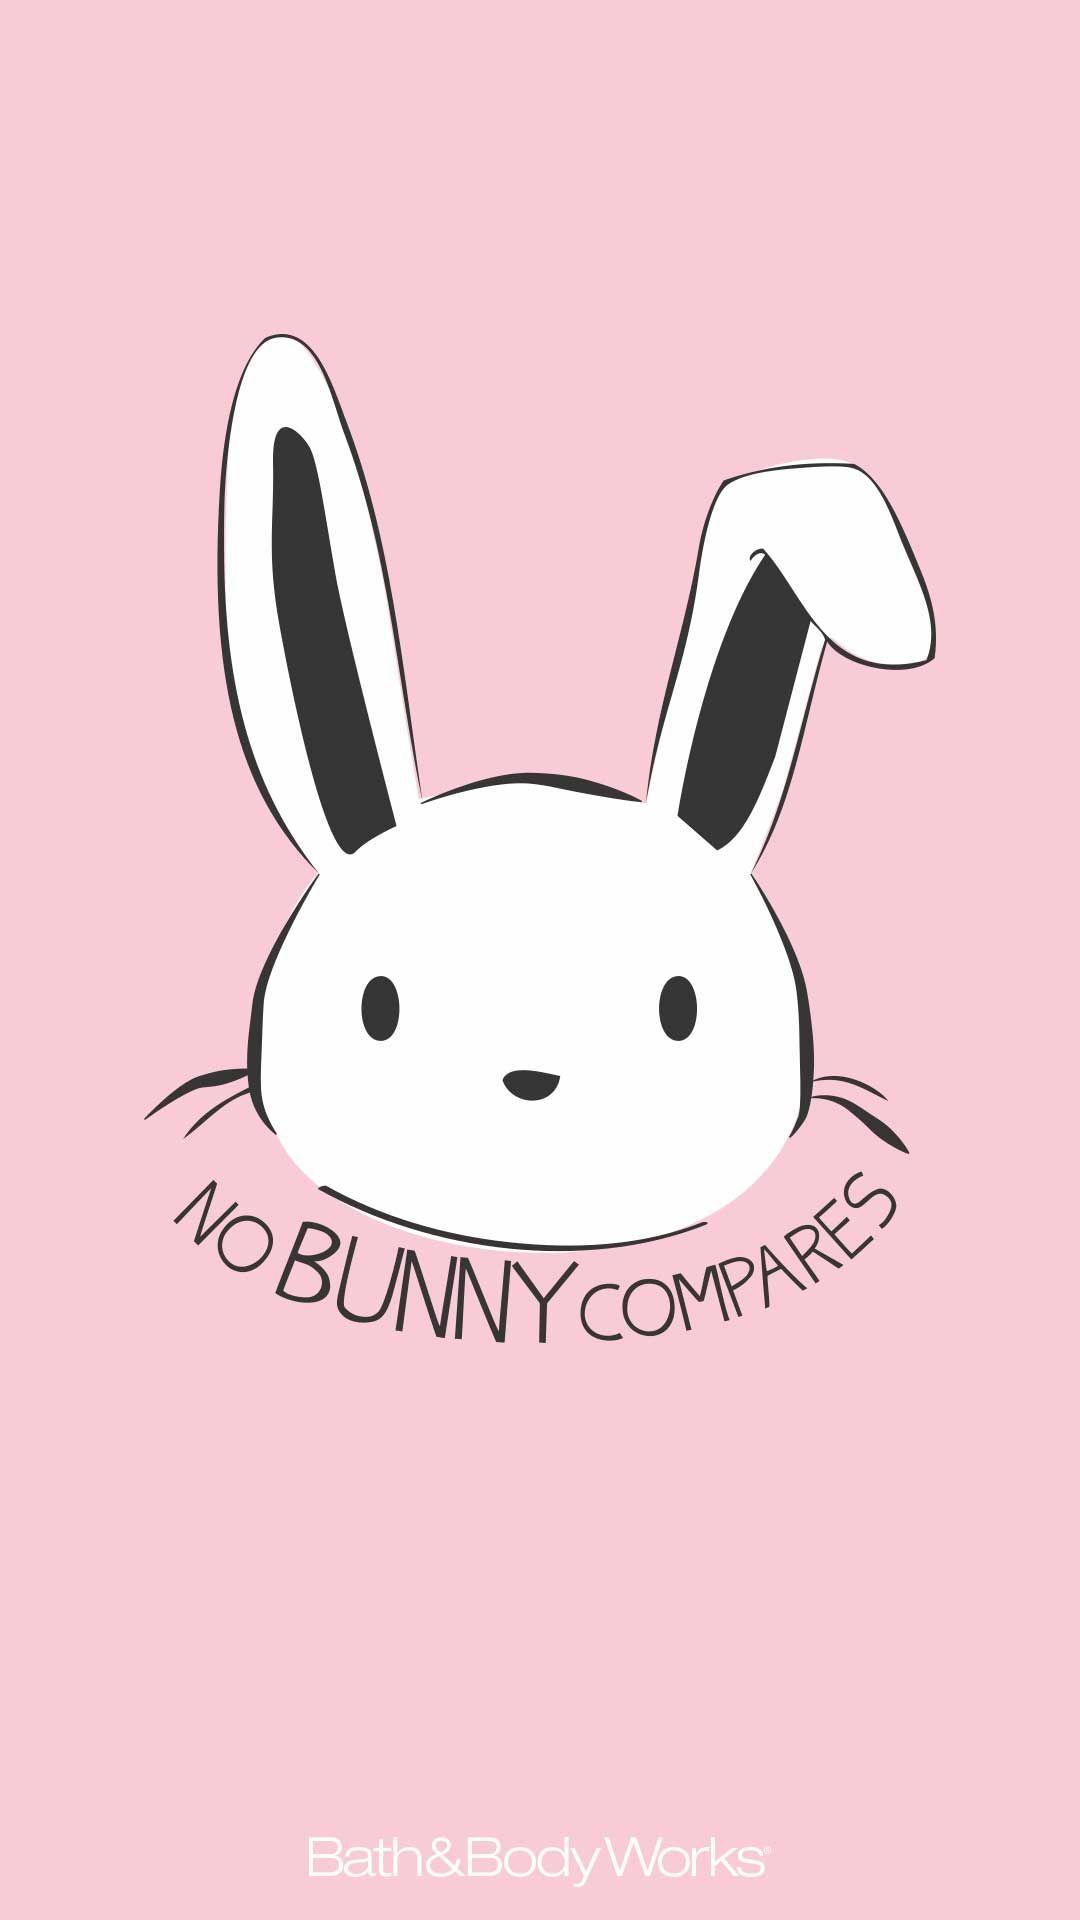 No Bunny Compares Easter iPhone Wallpaper. Rabbit wallpaper